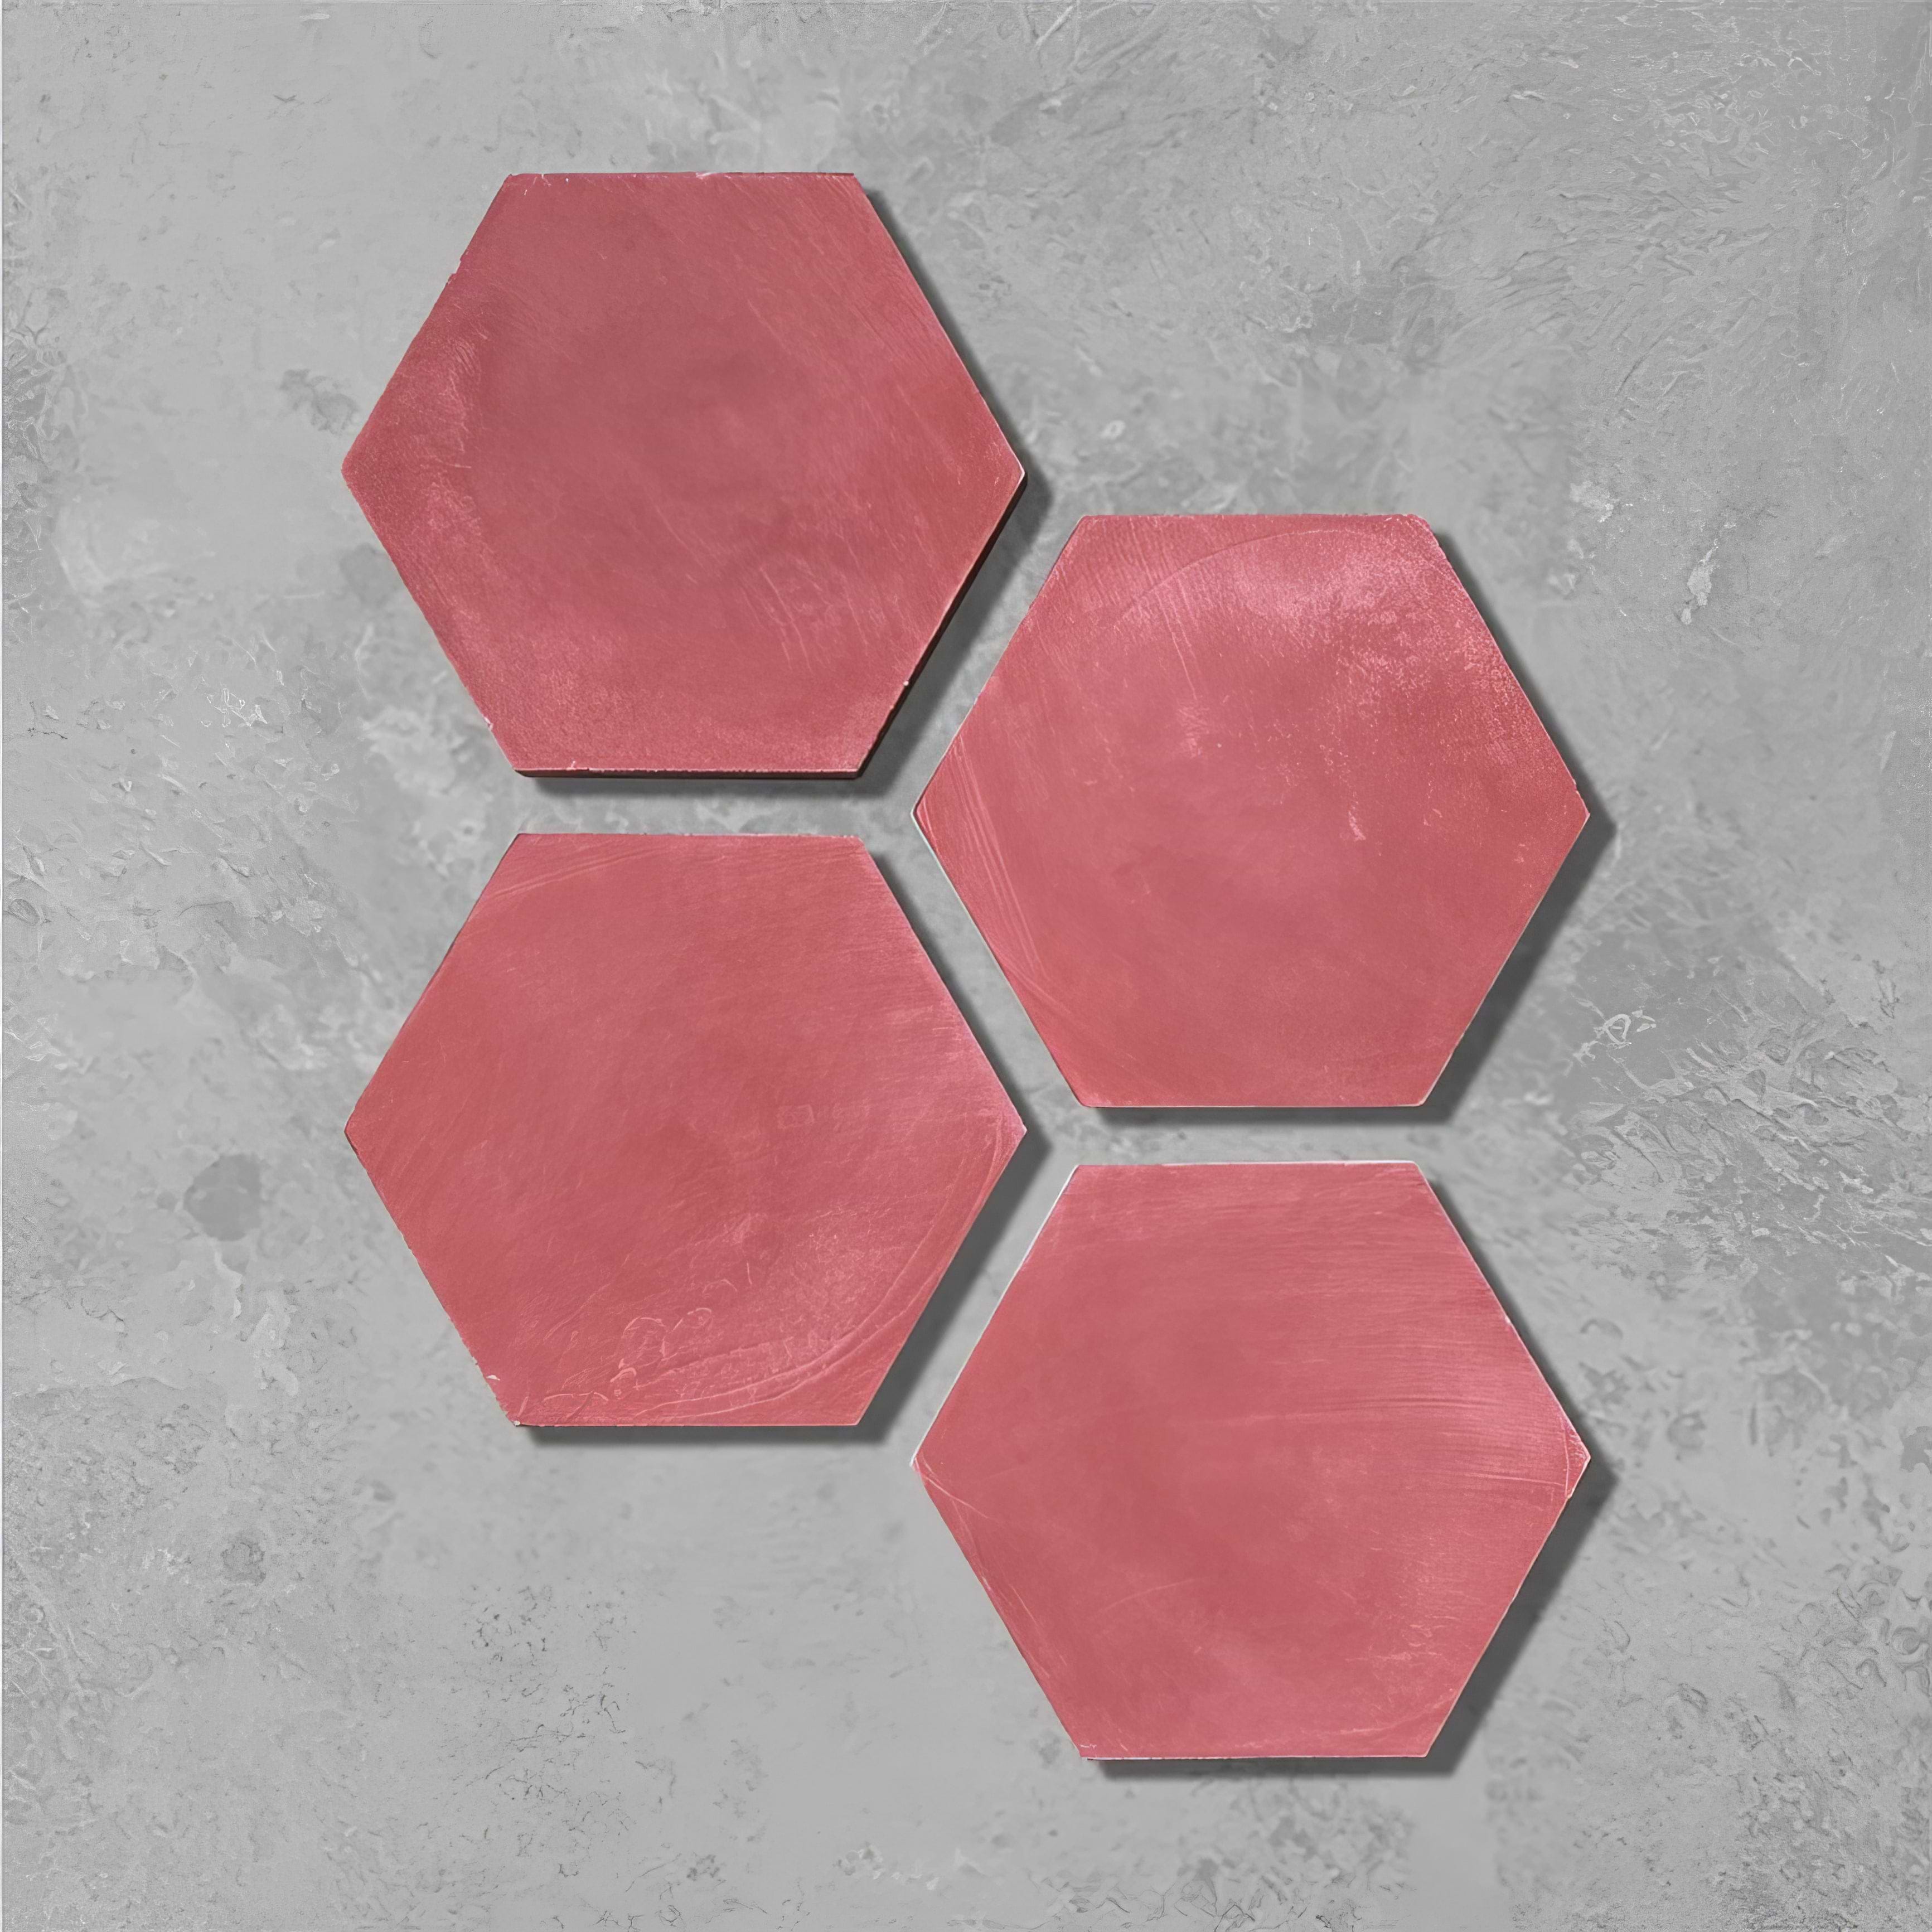 Rhubarb Hexagonal Tile - Hyperion Tiles